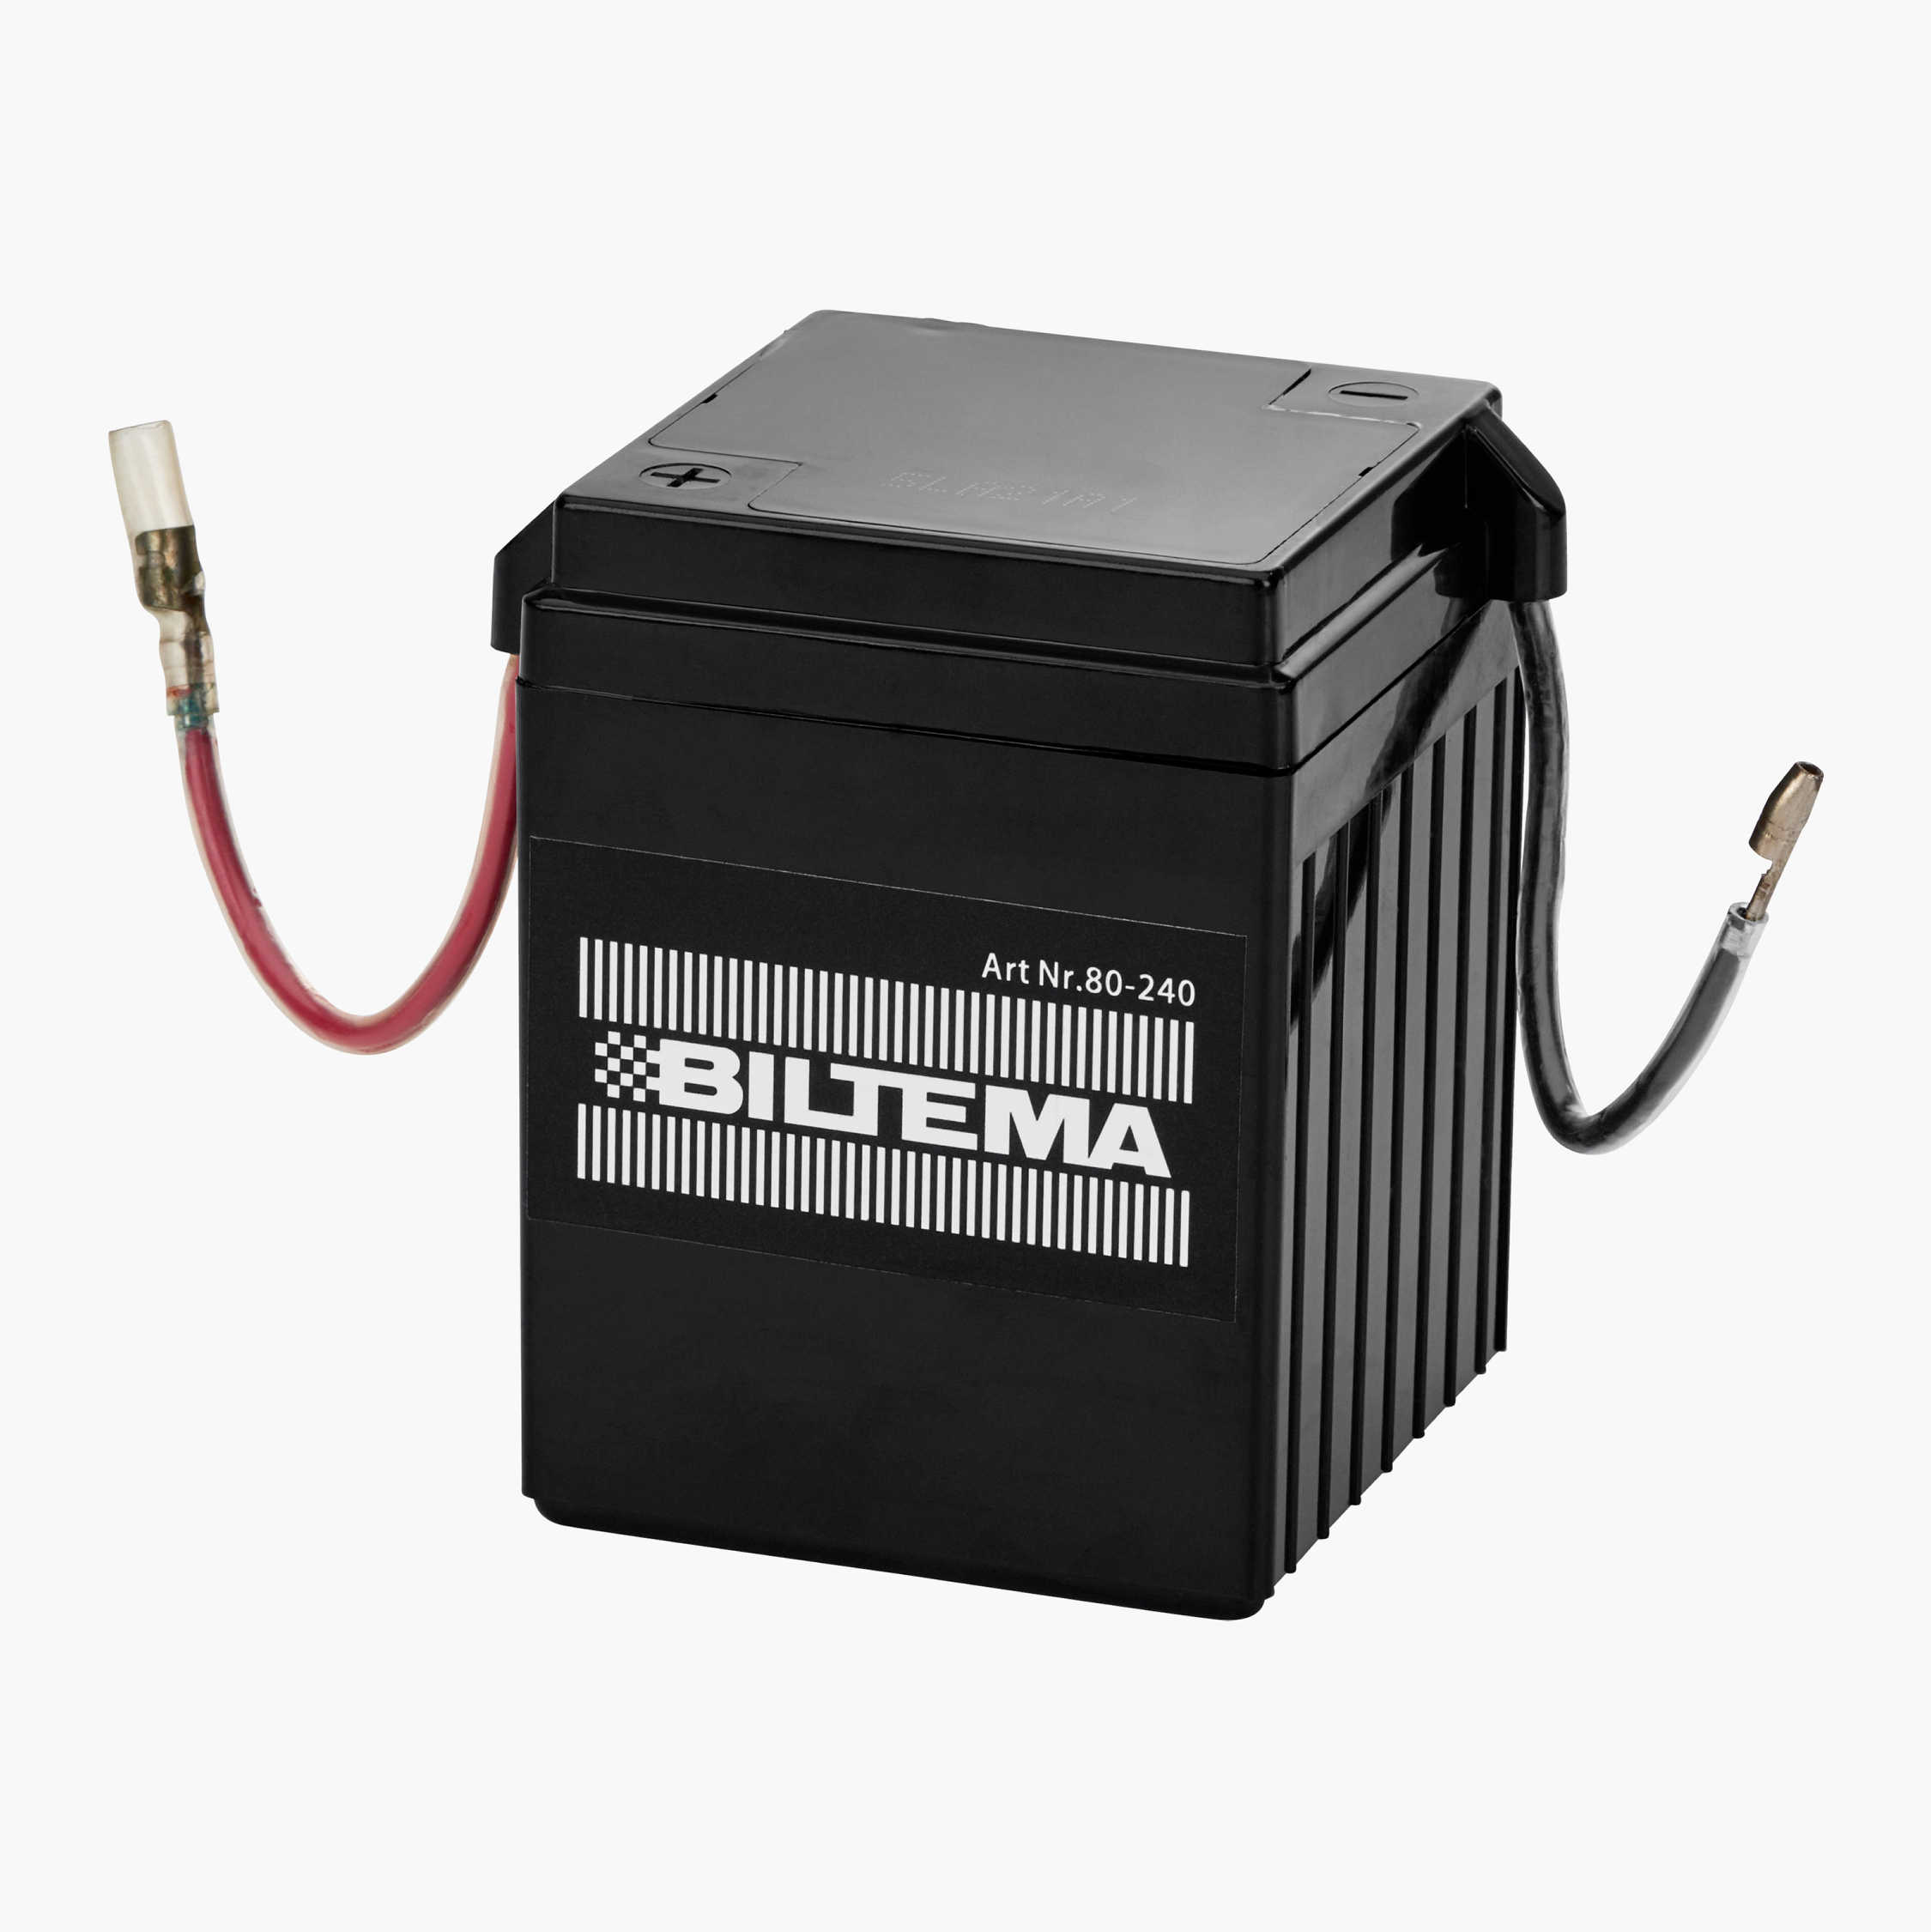 Et bestemt Sway solsikke MC-batteri SMF, 6 V, 4 Ah, 71 x 71 x 93 mm - Biltema.dk